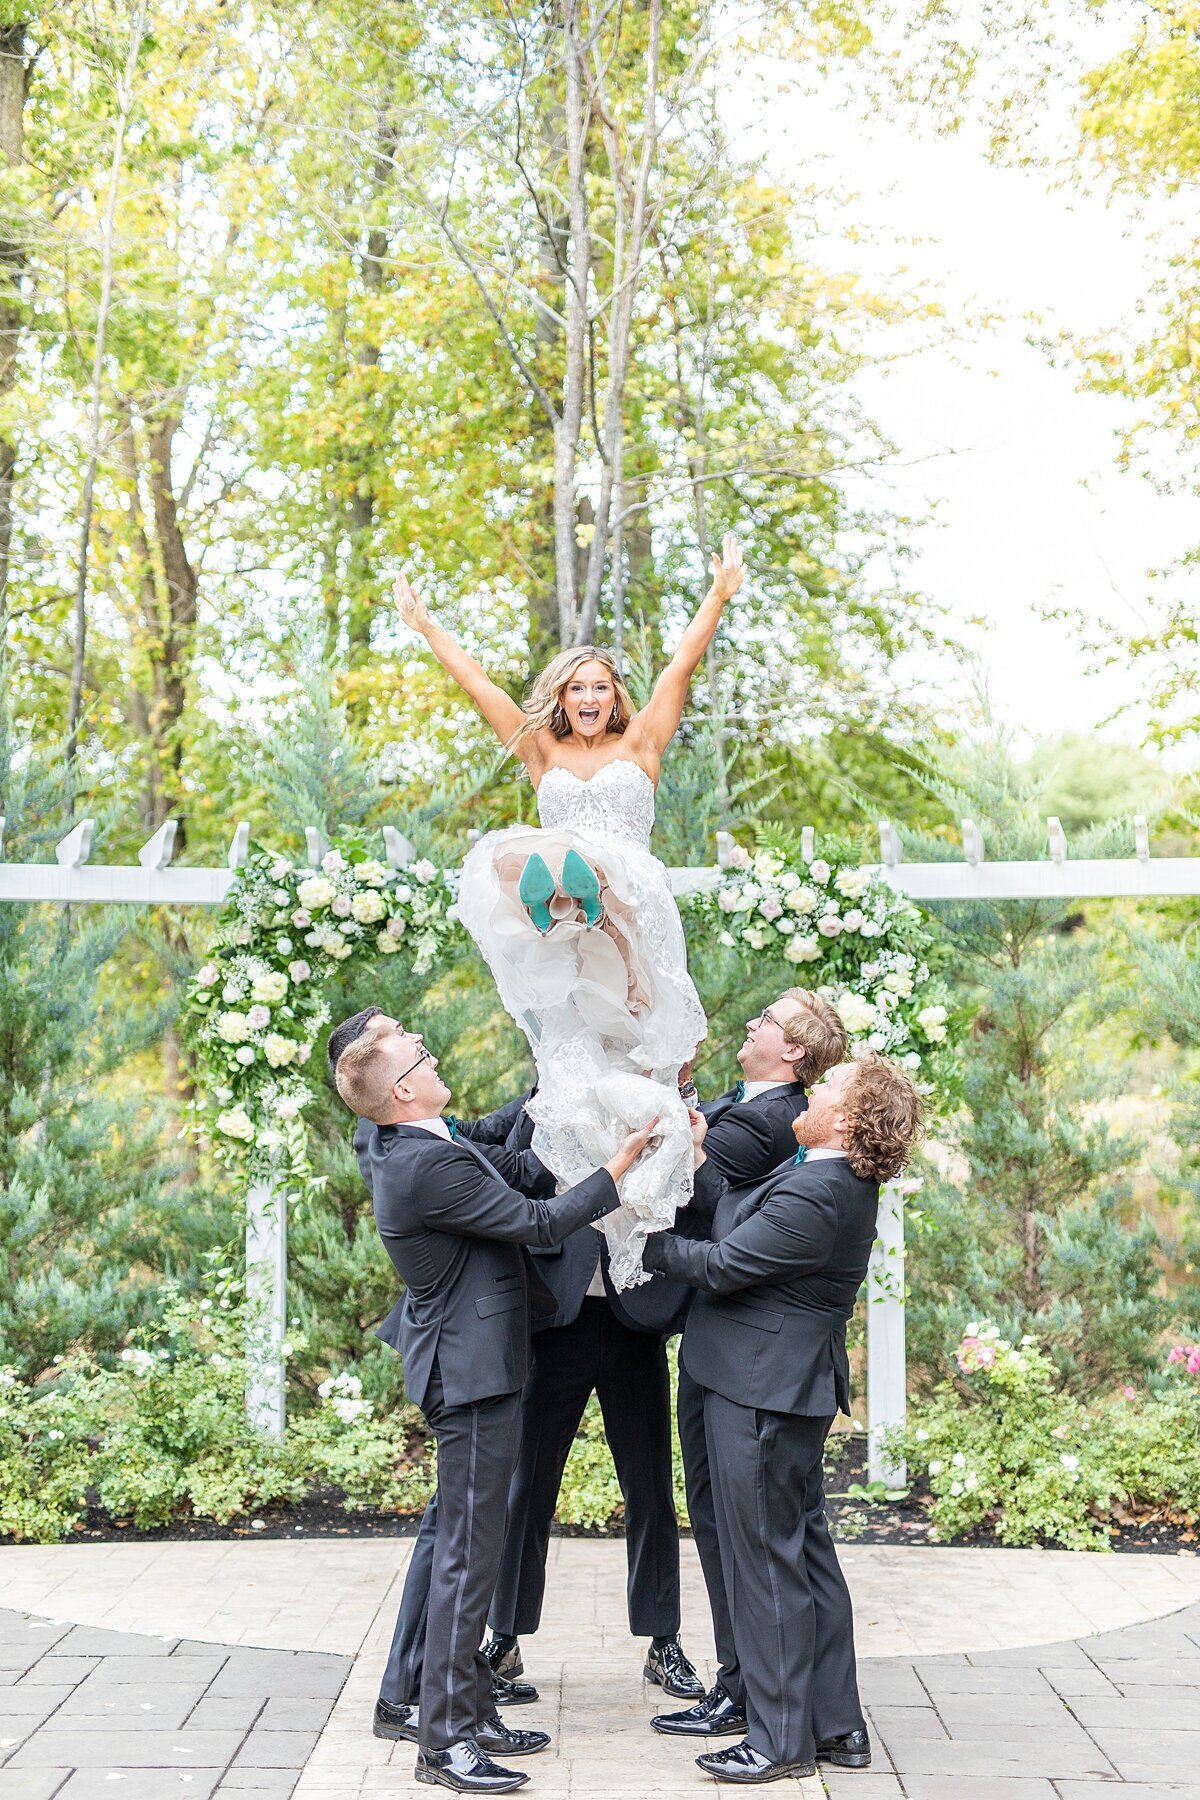 Groomsmen throwing bride in Essence of Australia wedding dress by Sherr Weddings based in Carlsbad, California.